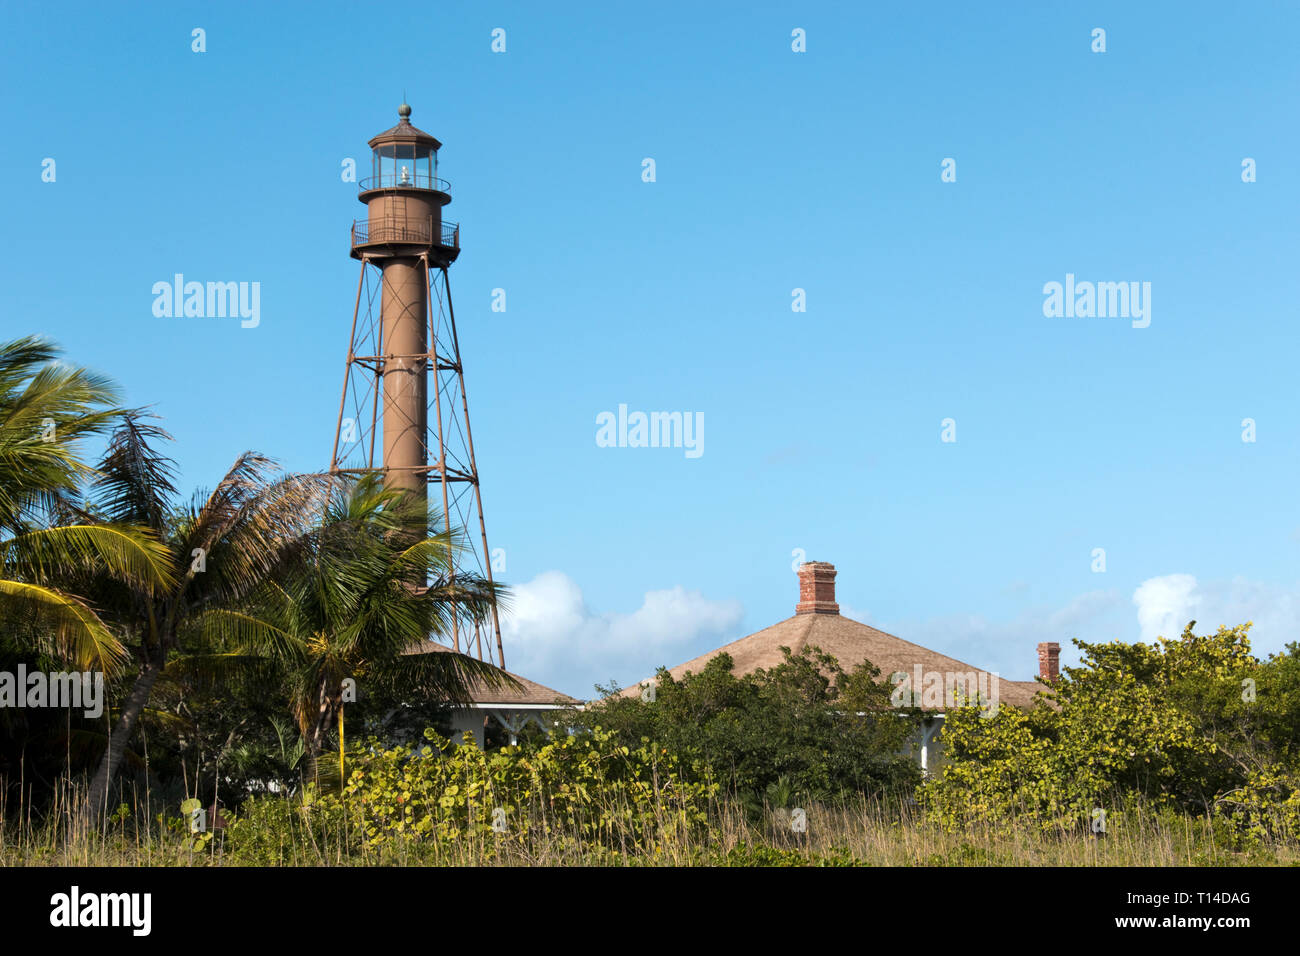 Le 98-pieds de haut phare de Sanibel Island de fer a d'abord éclairé en 1884, sur l'île de Sanibel, une île près de Fort Myers, en Floride. Banque D'Images